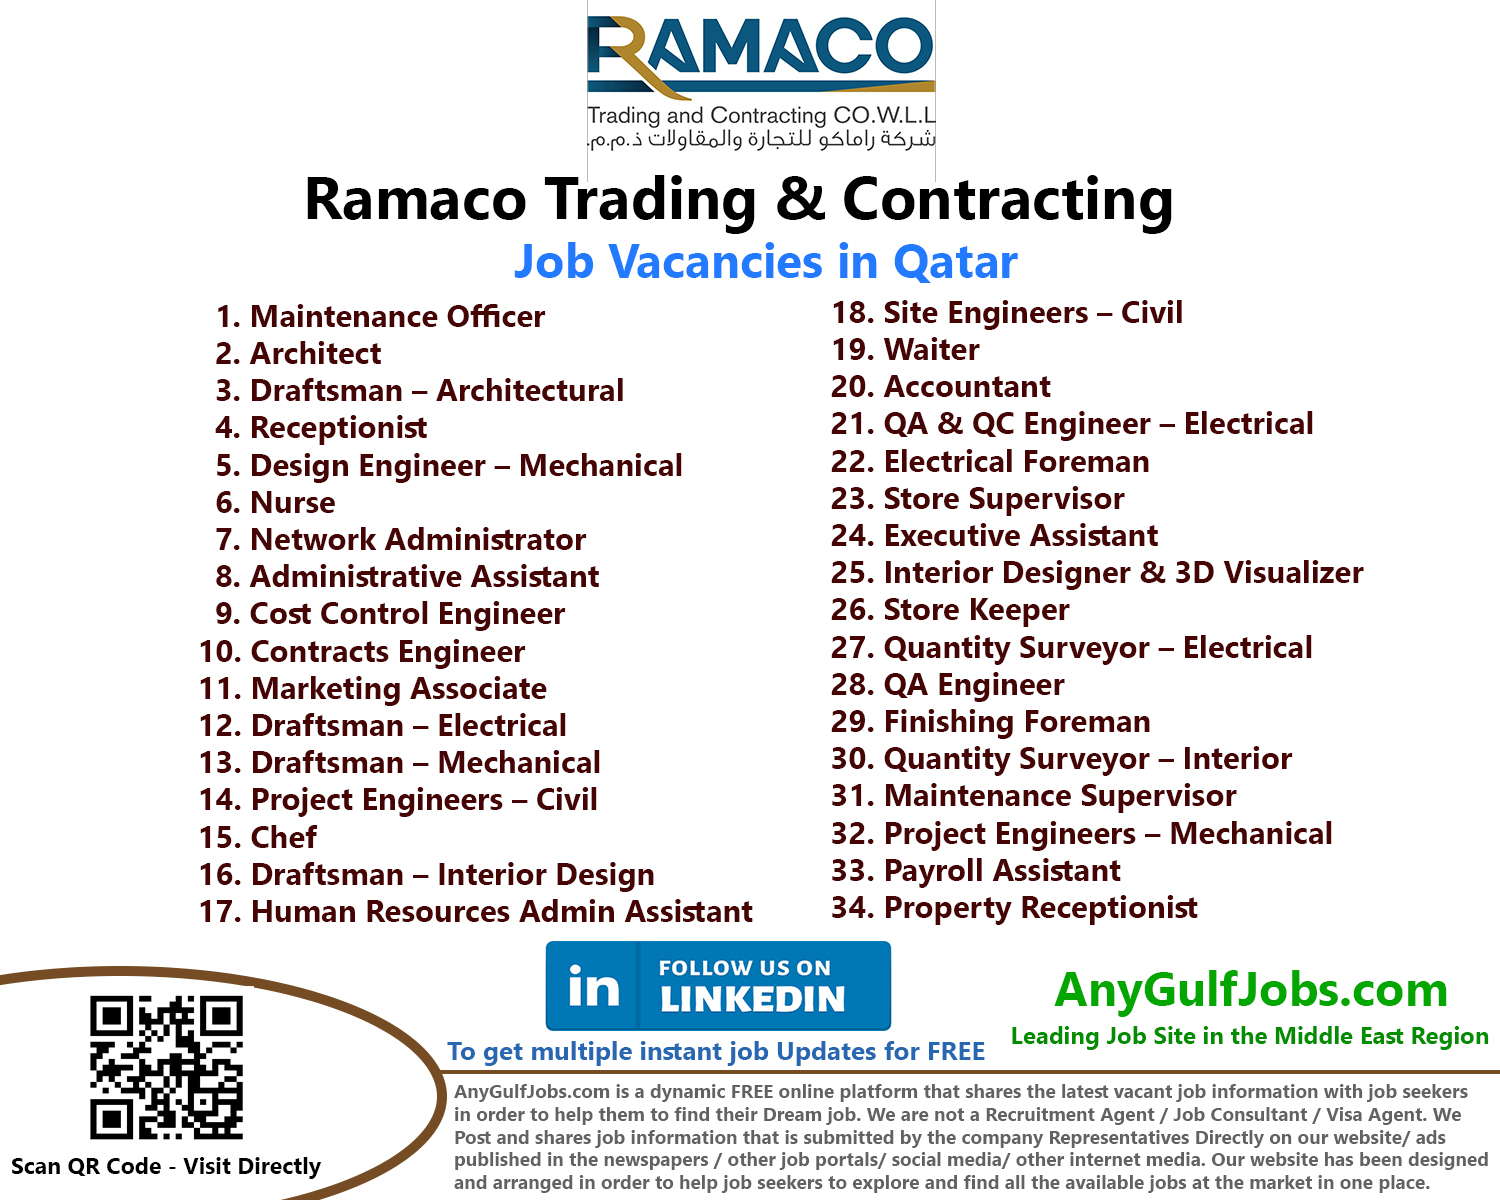 Ramaco Trading & Contracting - Qatar Job Vacancies